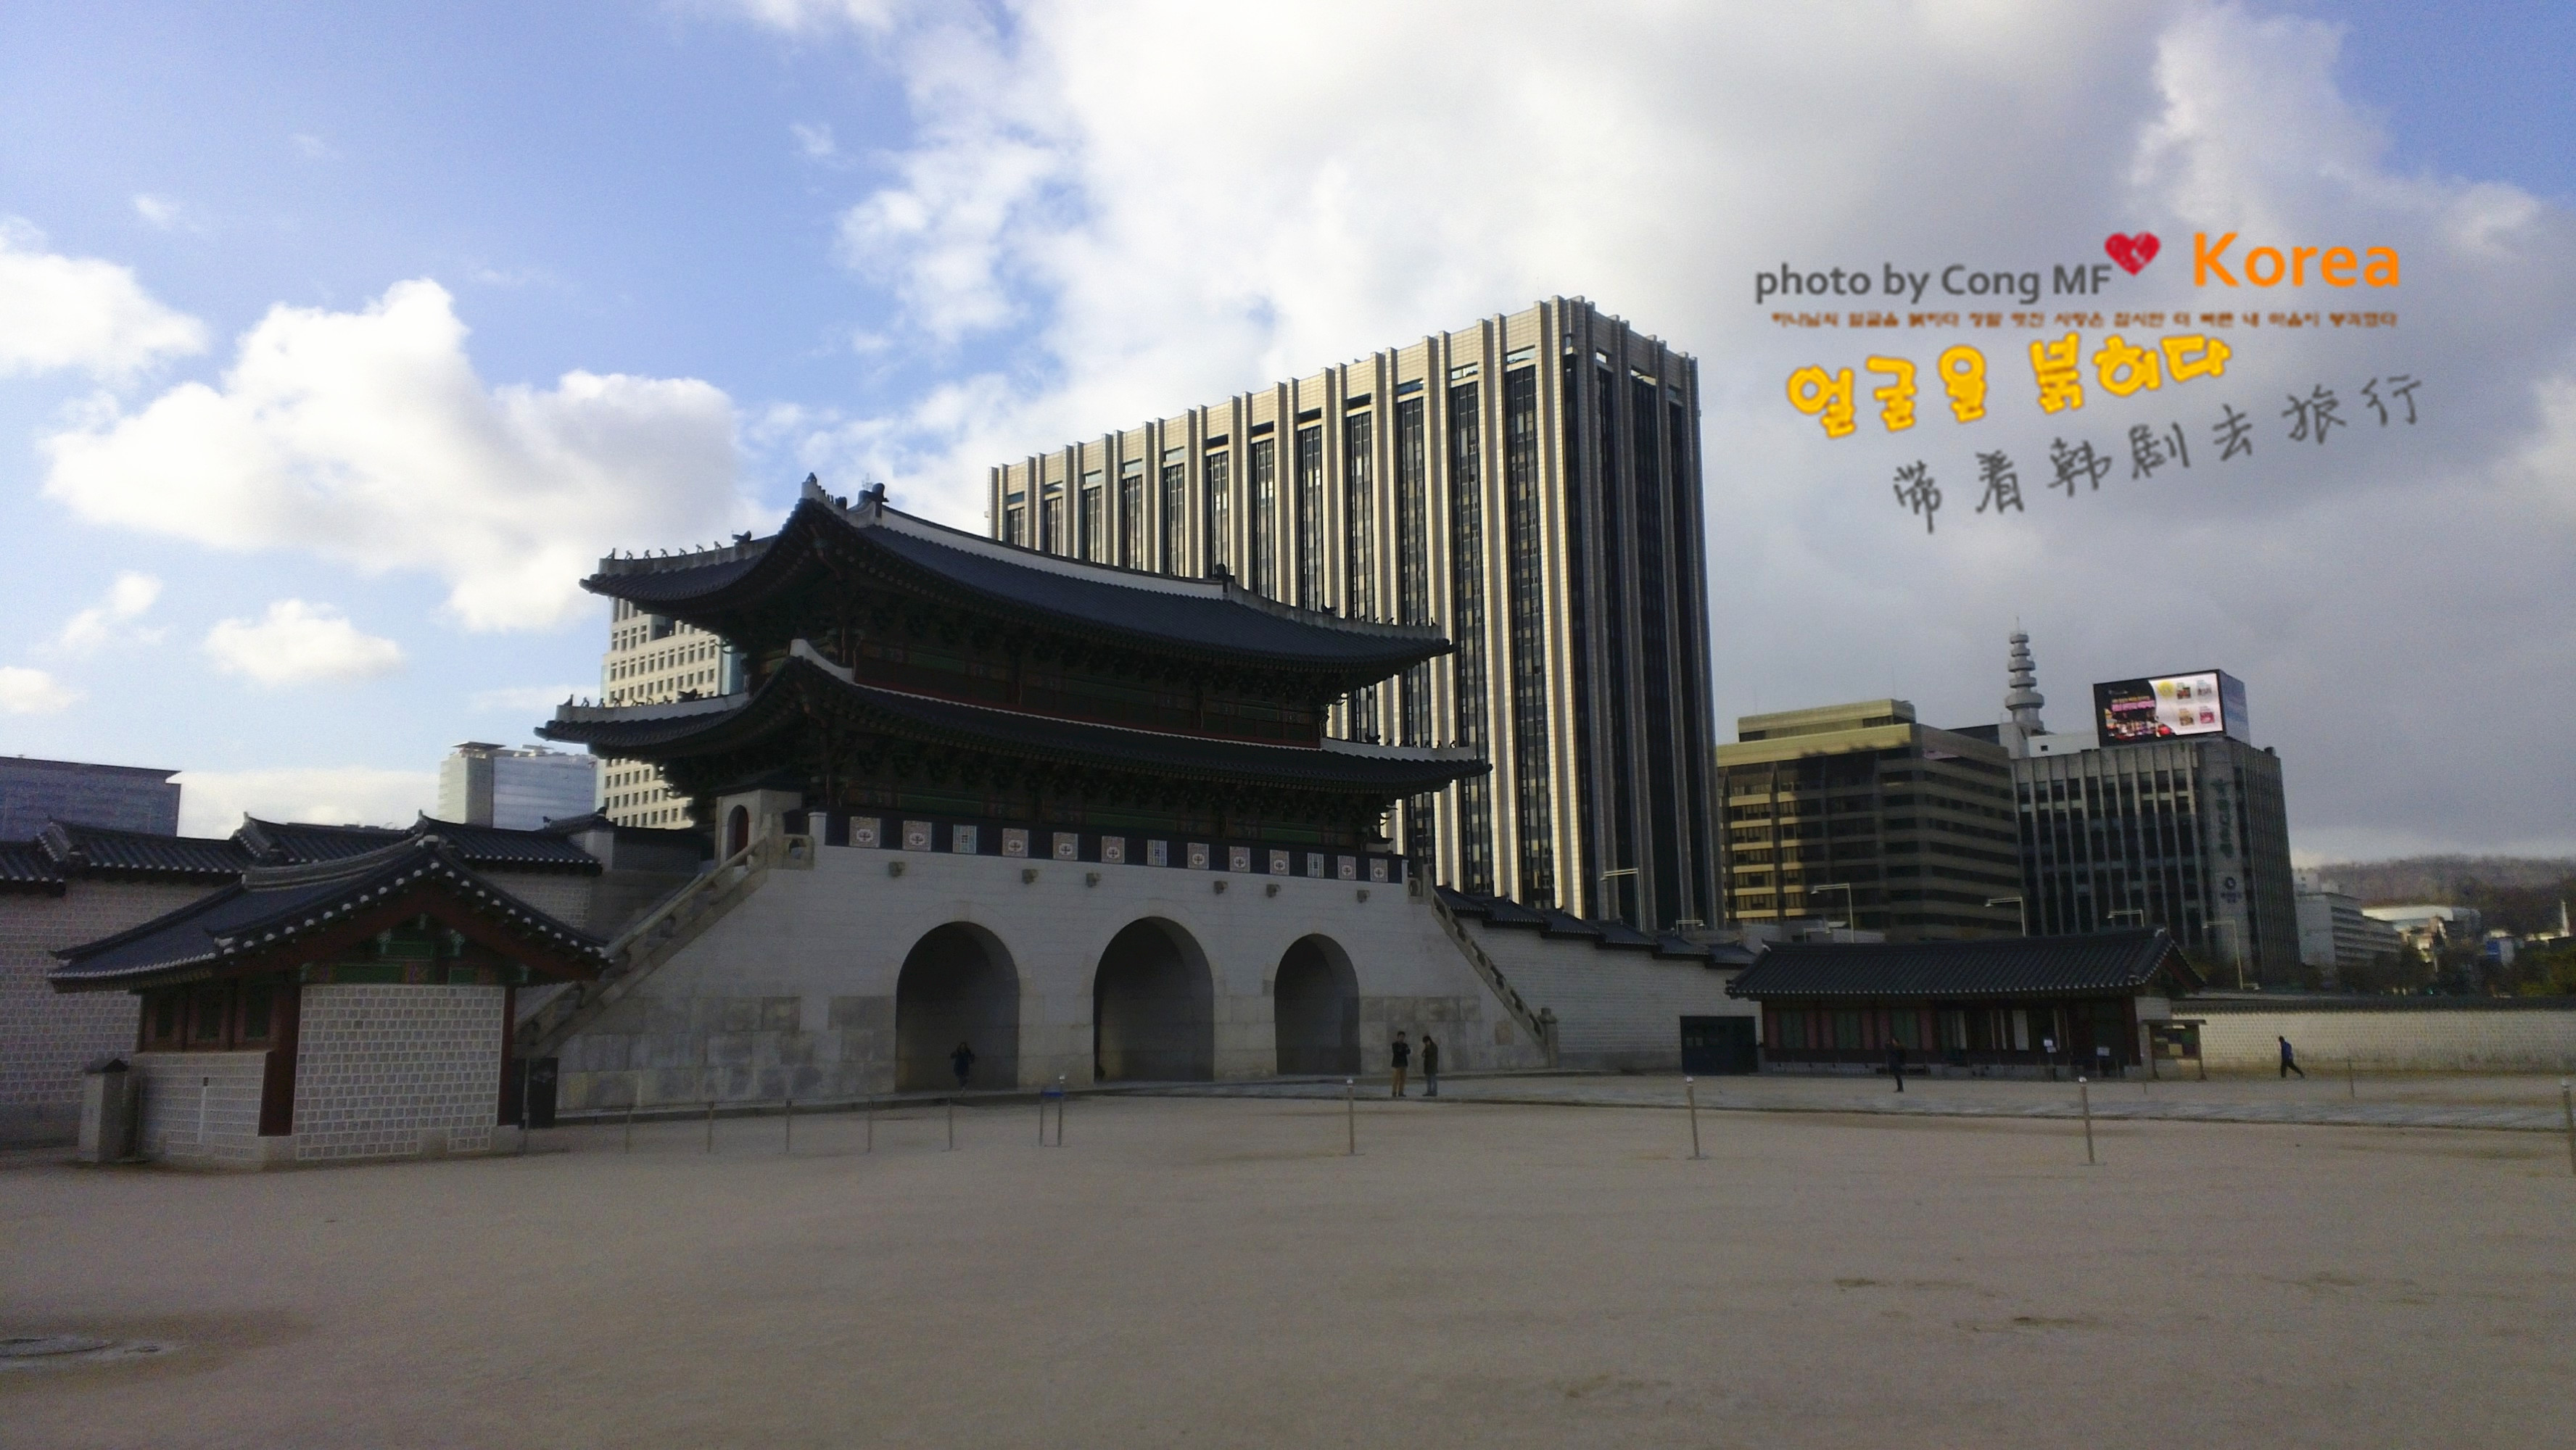 由330栋建筑组成,是朝鲜王朝的始祖—太祖李成桂将原来高丽的首都